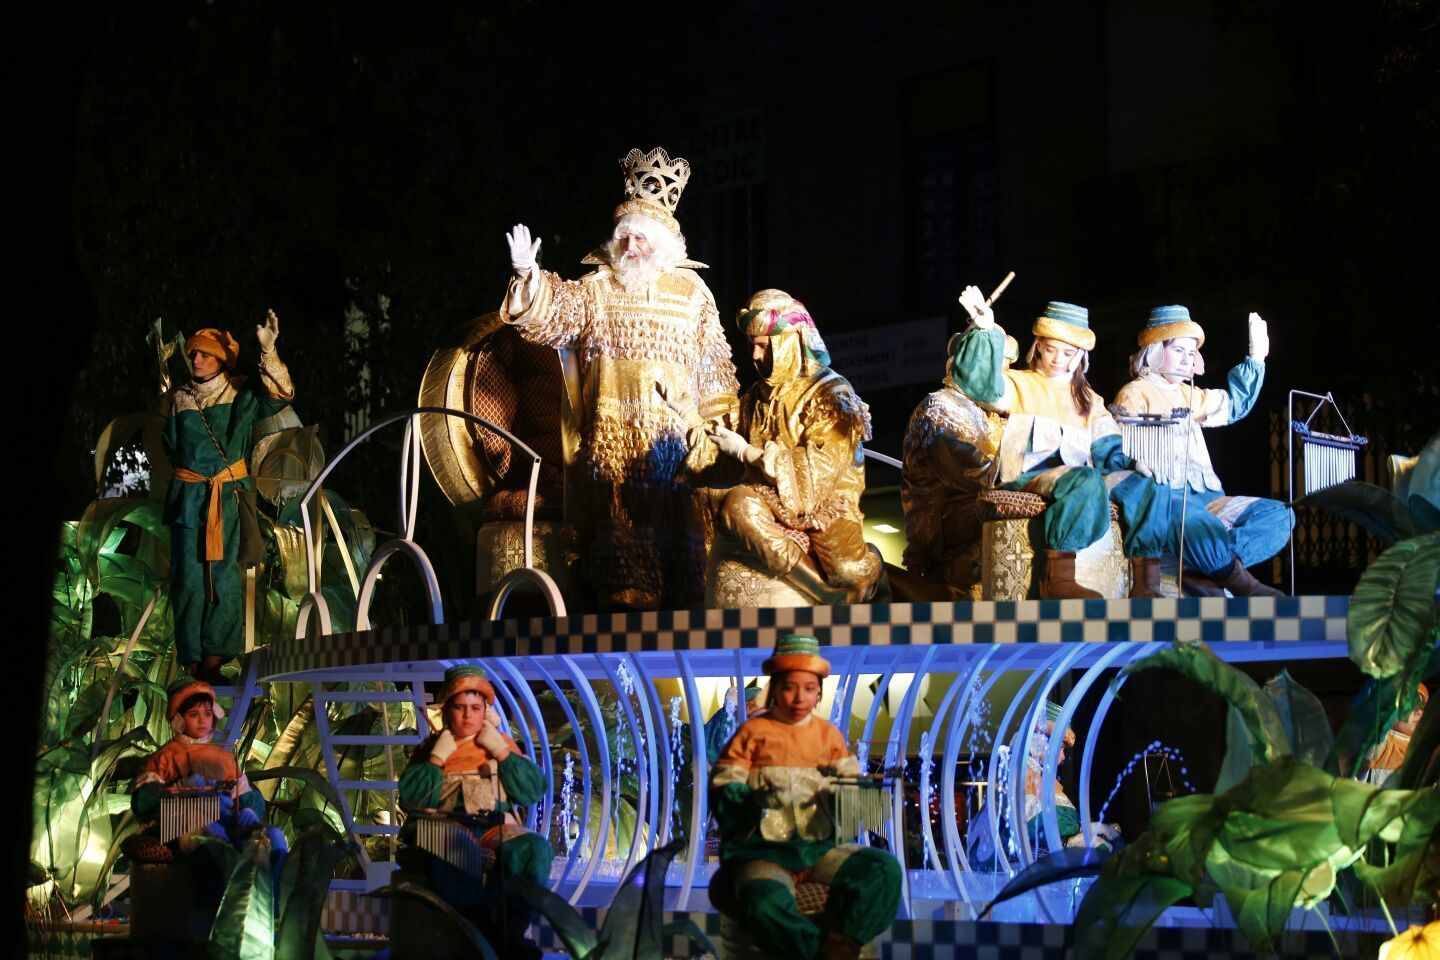 La cabalgata de Reyes de Barcelona estrenará carrozas y personajes